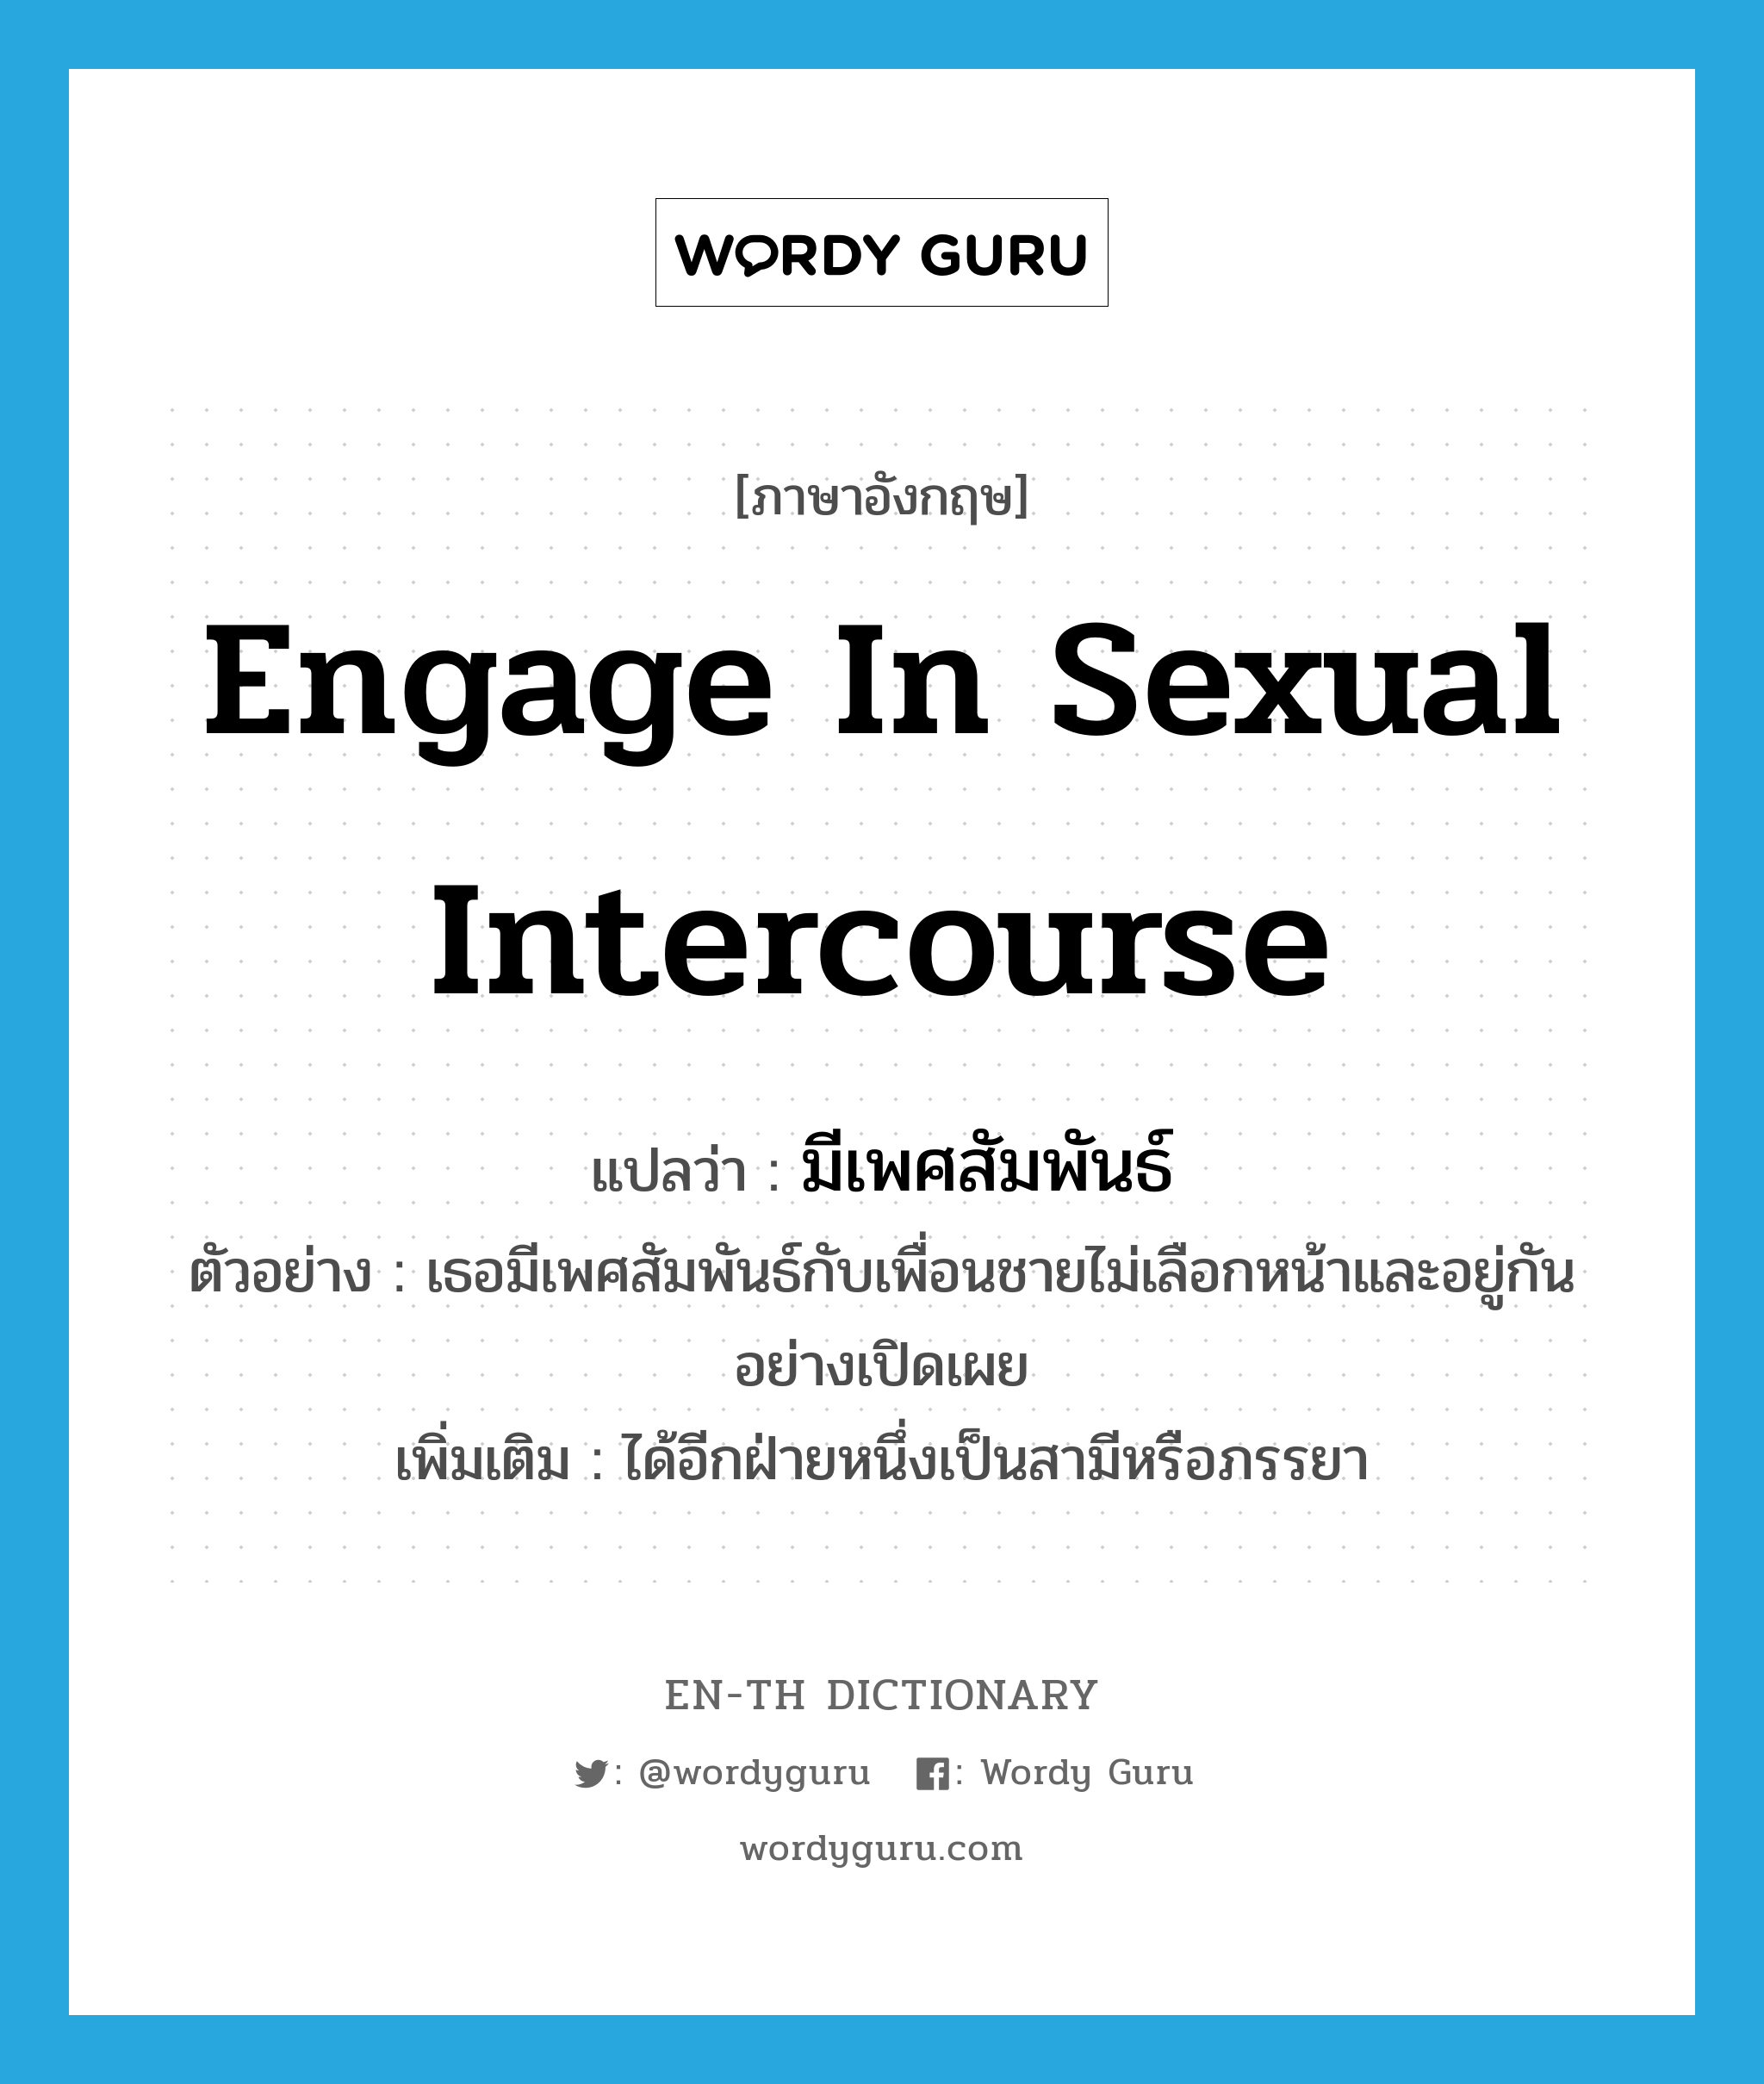 engage in sexual intercourse แปลว่า?, คำศัพท์ภาษาอังกฤษ engage in sexual intercourse แปลว่า มีเพศสัมพันธ์ ประเภท V ตัวอย่าง เธอมีเพศสัมพันธ์กับเพื่อนชายไม่เลือกหน้าและอยู่กันอย่างเปิดเผย เพิ่มเติม ได้อีกฝ่ายหนึ่งเป็นสามีหรือภรรยา หมวด V